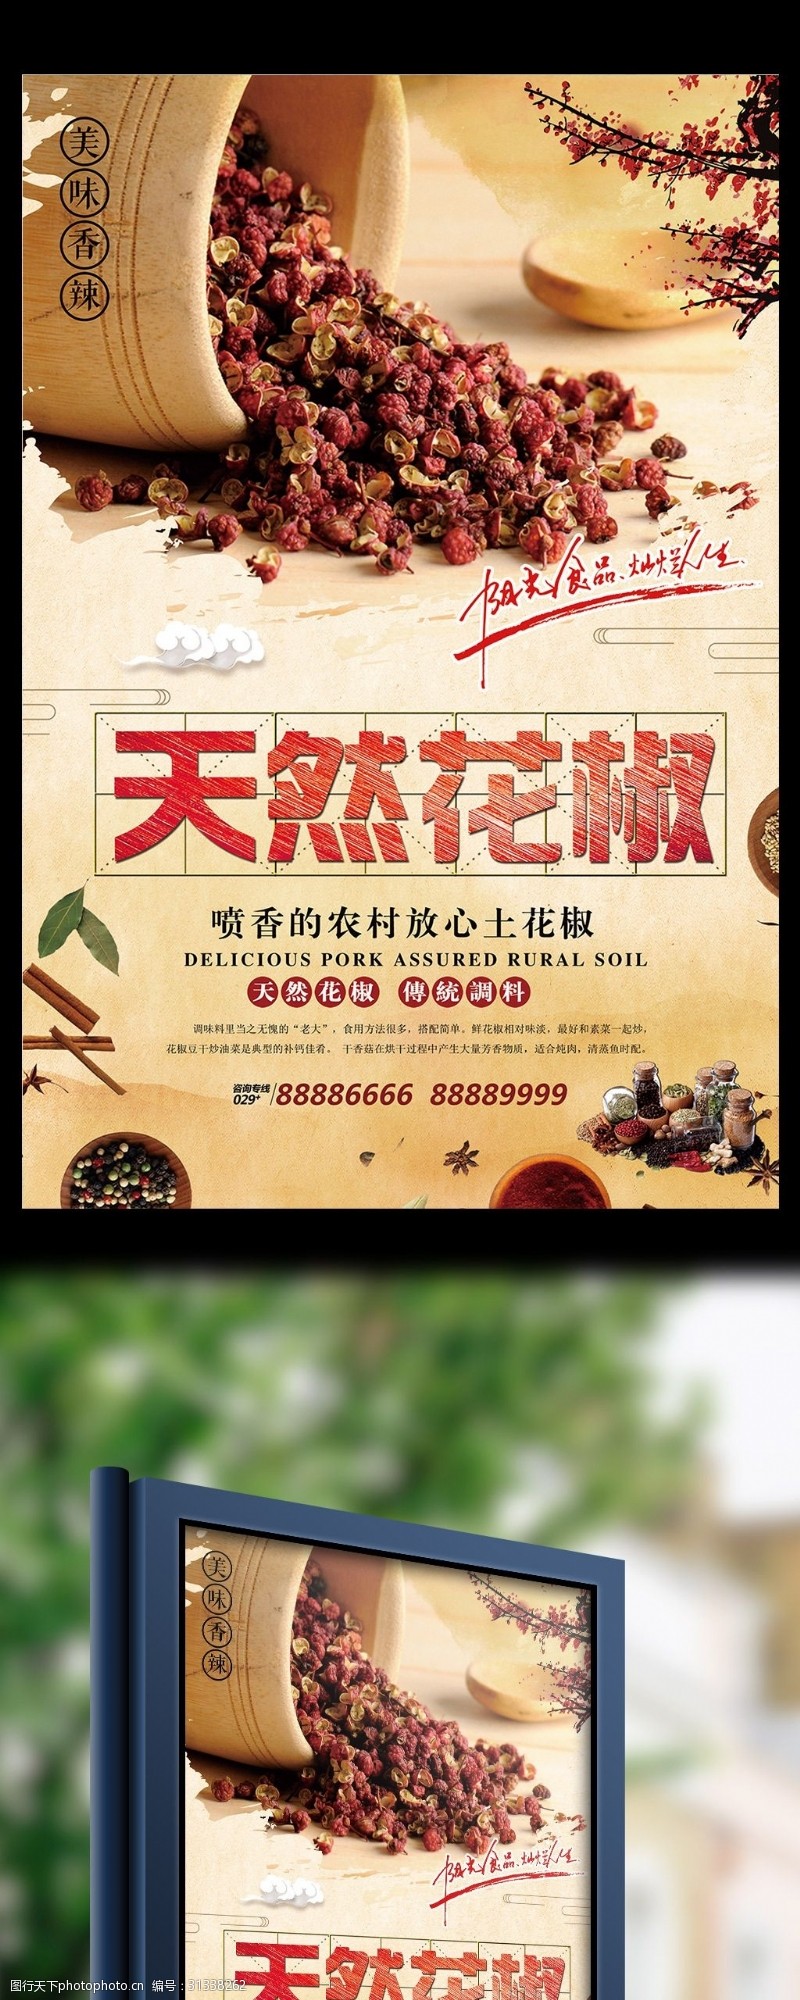 调料批发天然花椒调制品宣传海报设计